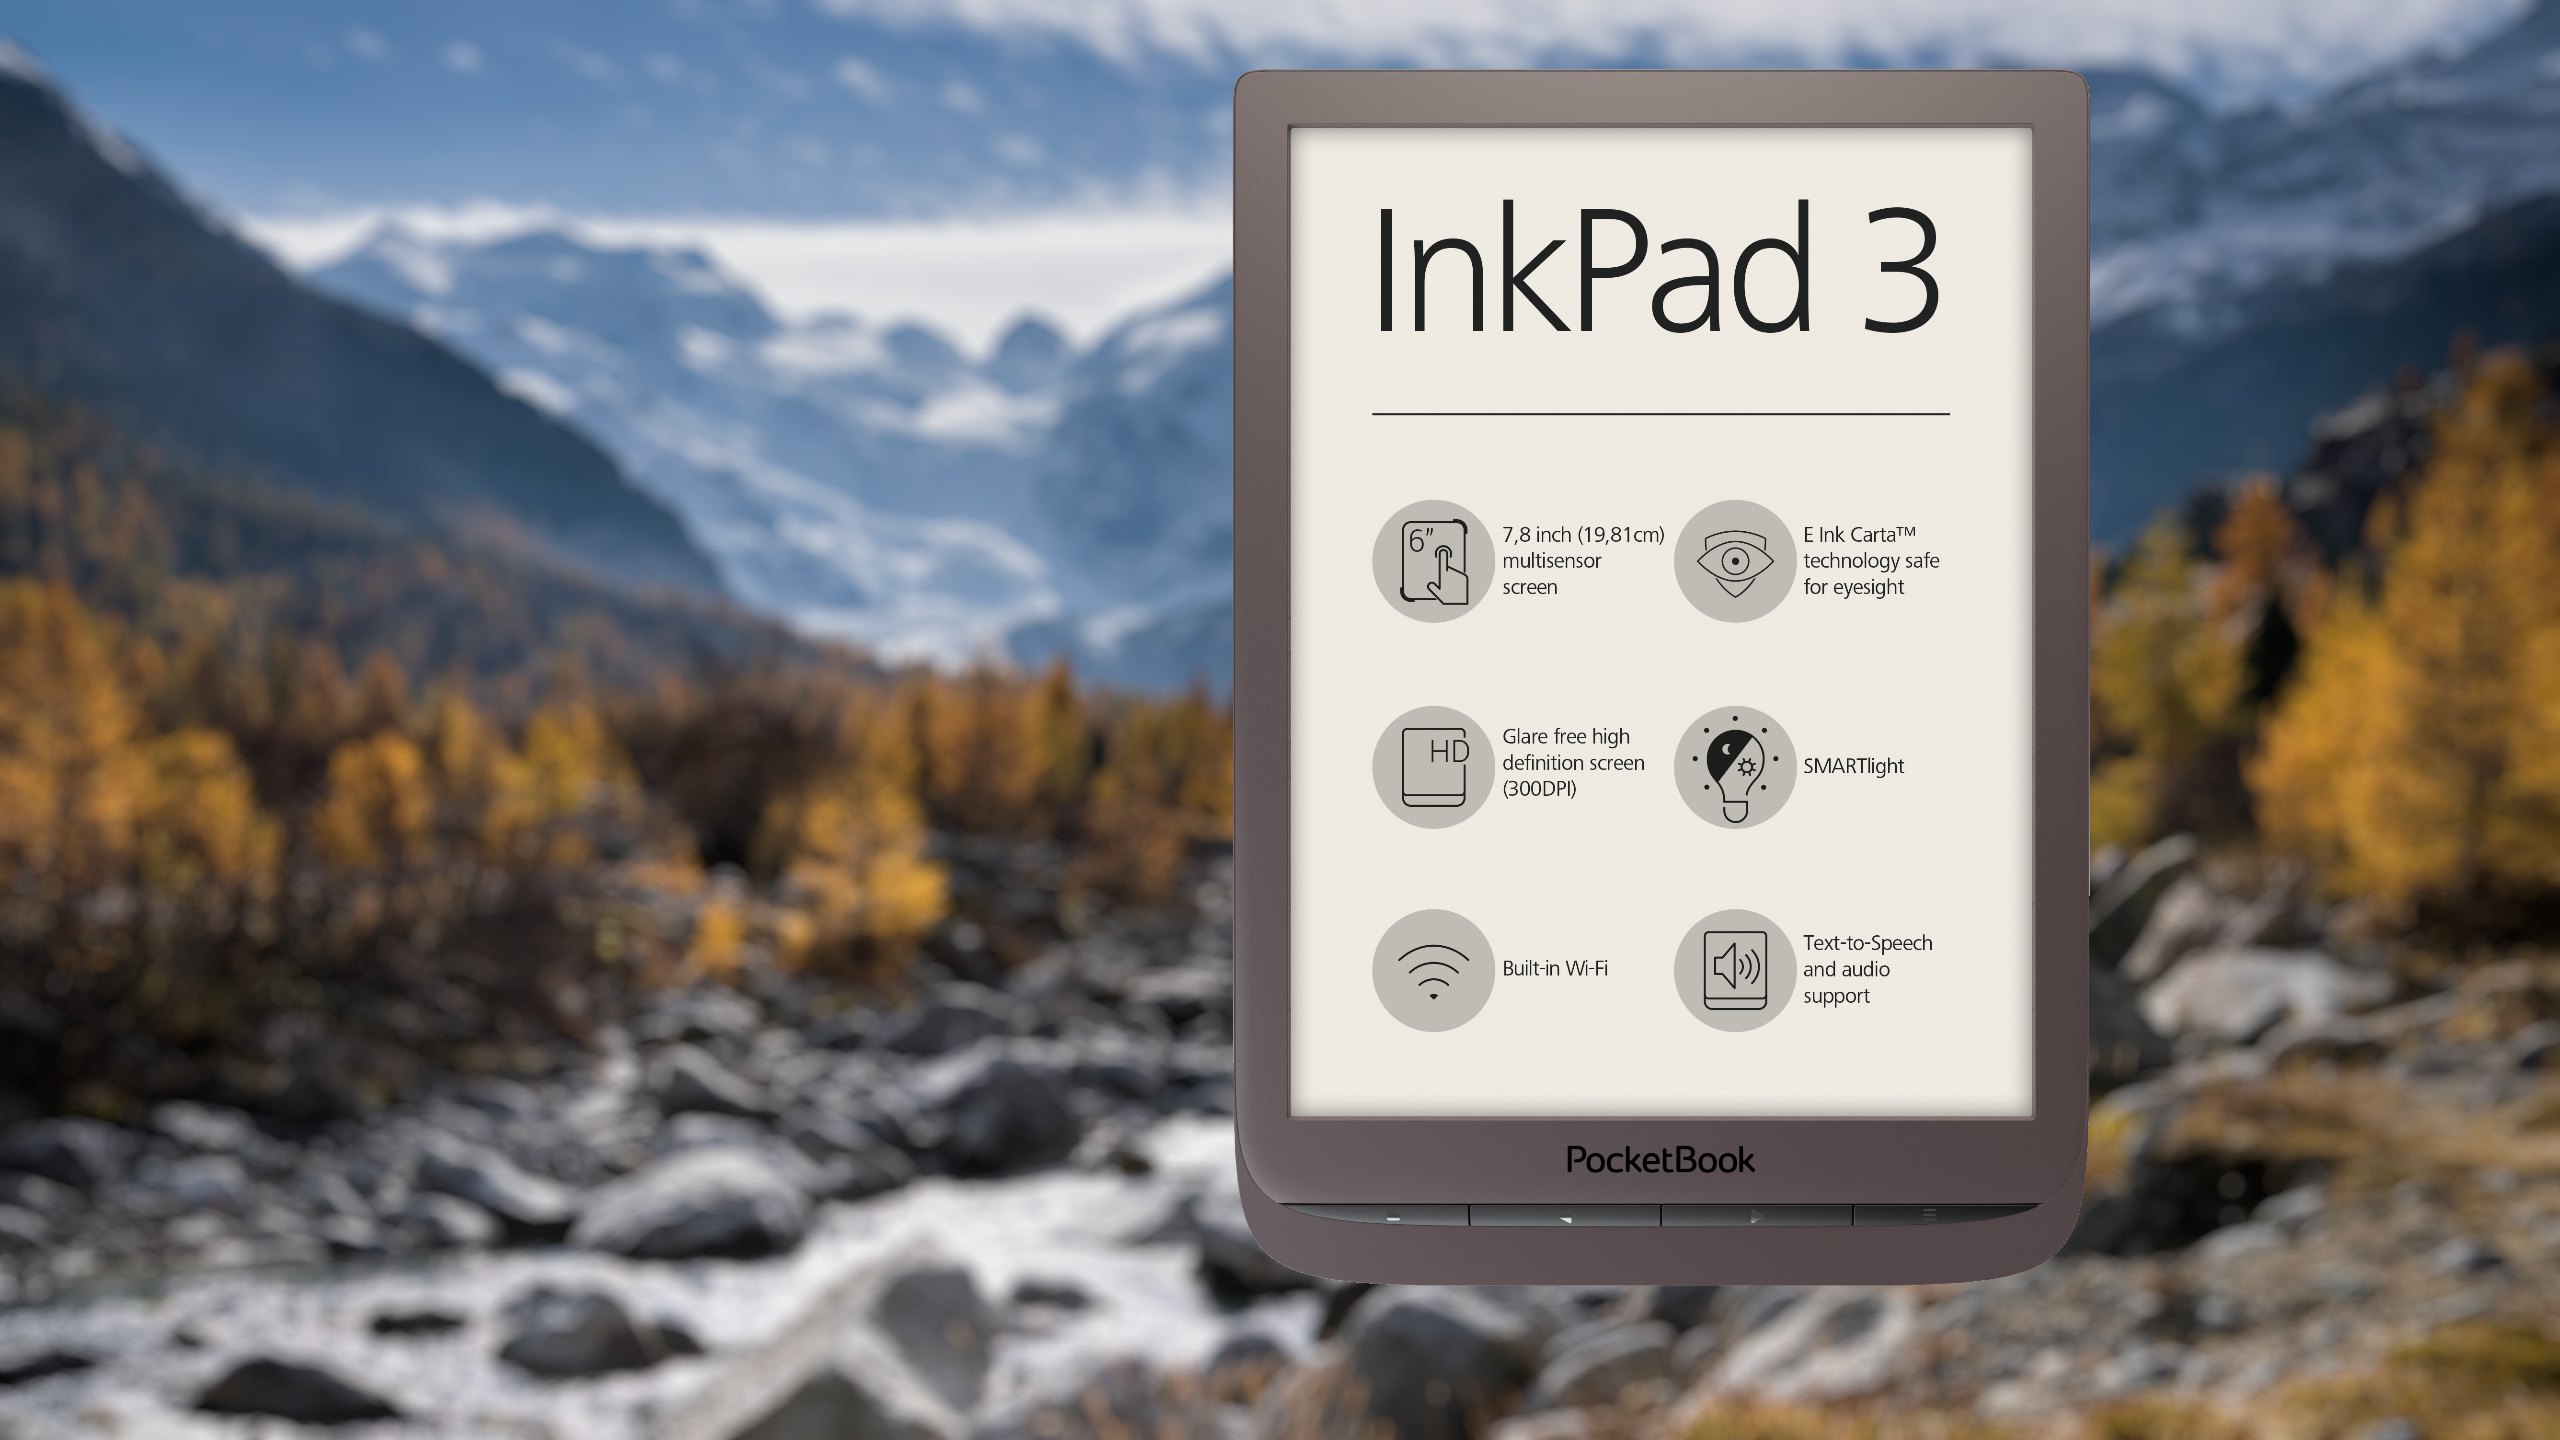 Bogato wyposażony czytnik e-booków – PocketBook InkPad 3 – wchodzi do sprzedaży w Polsce